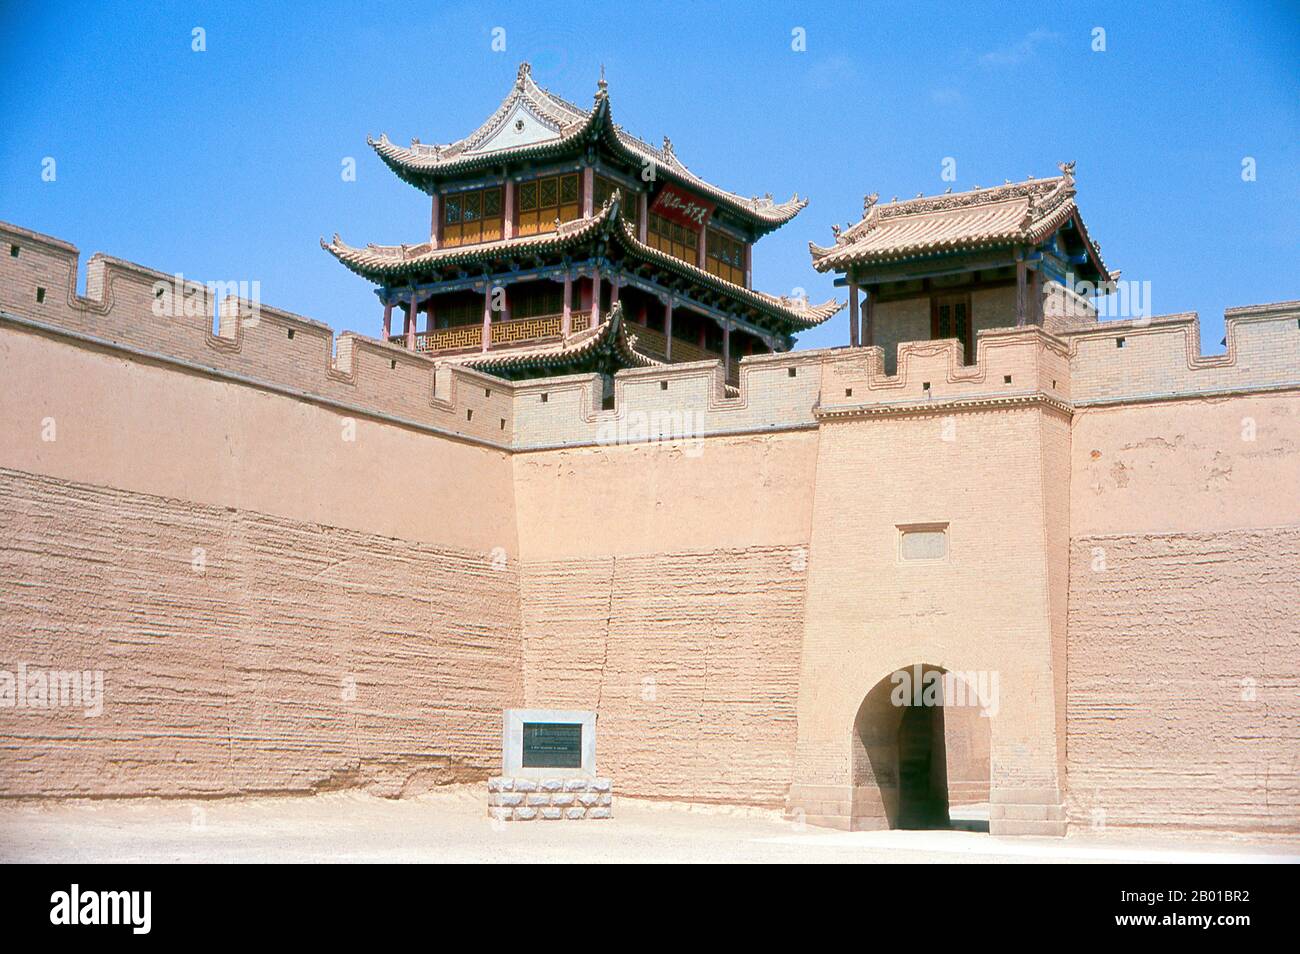 Cina: Ingresso esterno a Guanghua Men (porta dell'Illuminismo), Jiayuguan Fort, Jiayuguan, Gansu. Jiayuguan, il “primo e più grande passo sotto il cielo”, fu completato nel 1372 su ordine di Zhu Yuanzhang, il primo imperatore Ming (1368-98), per segnare la fine della Grande Muraglia Ming. Era anche il limite stesso della civiltà cinese, e gli inizi delle terre “barbariche” esterne. Per secoli il forte non era solo di importanza strategica per i cinesi Han, ma anche di significato culturale. Questo era l'ultimo luogo civilizzato prima delle tenebre esterne. Foto Stock